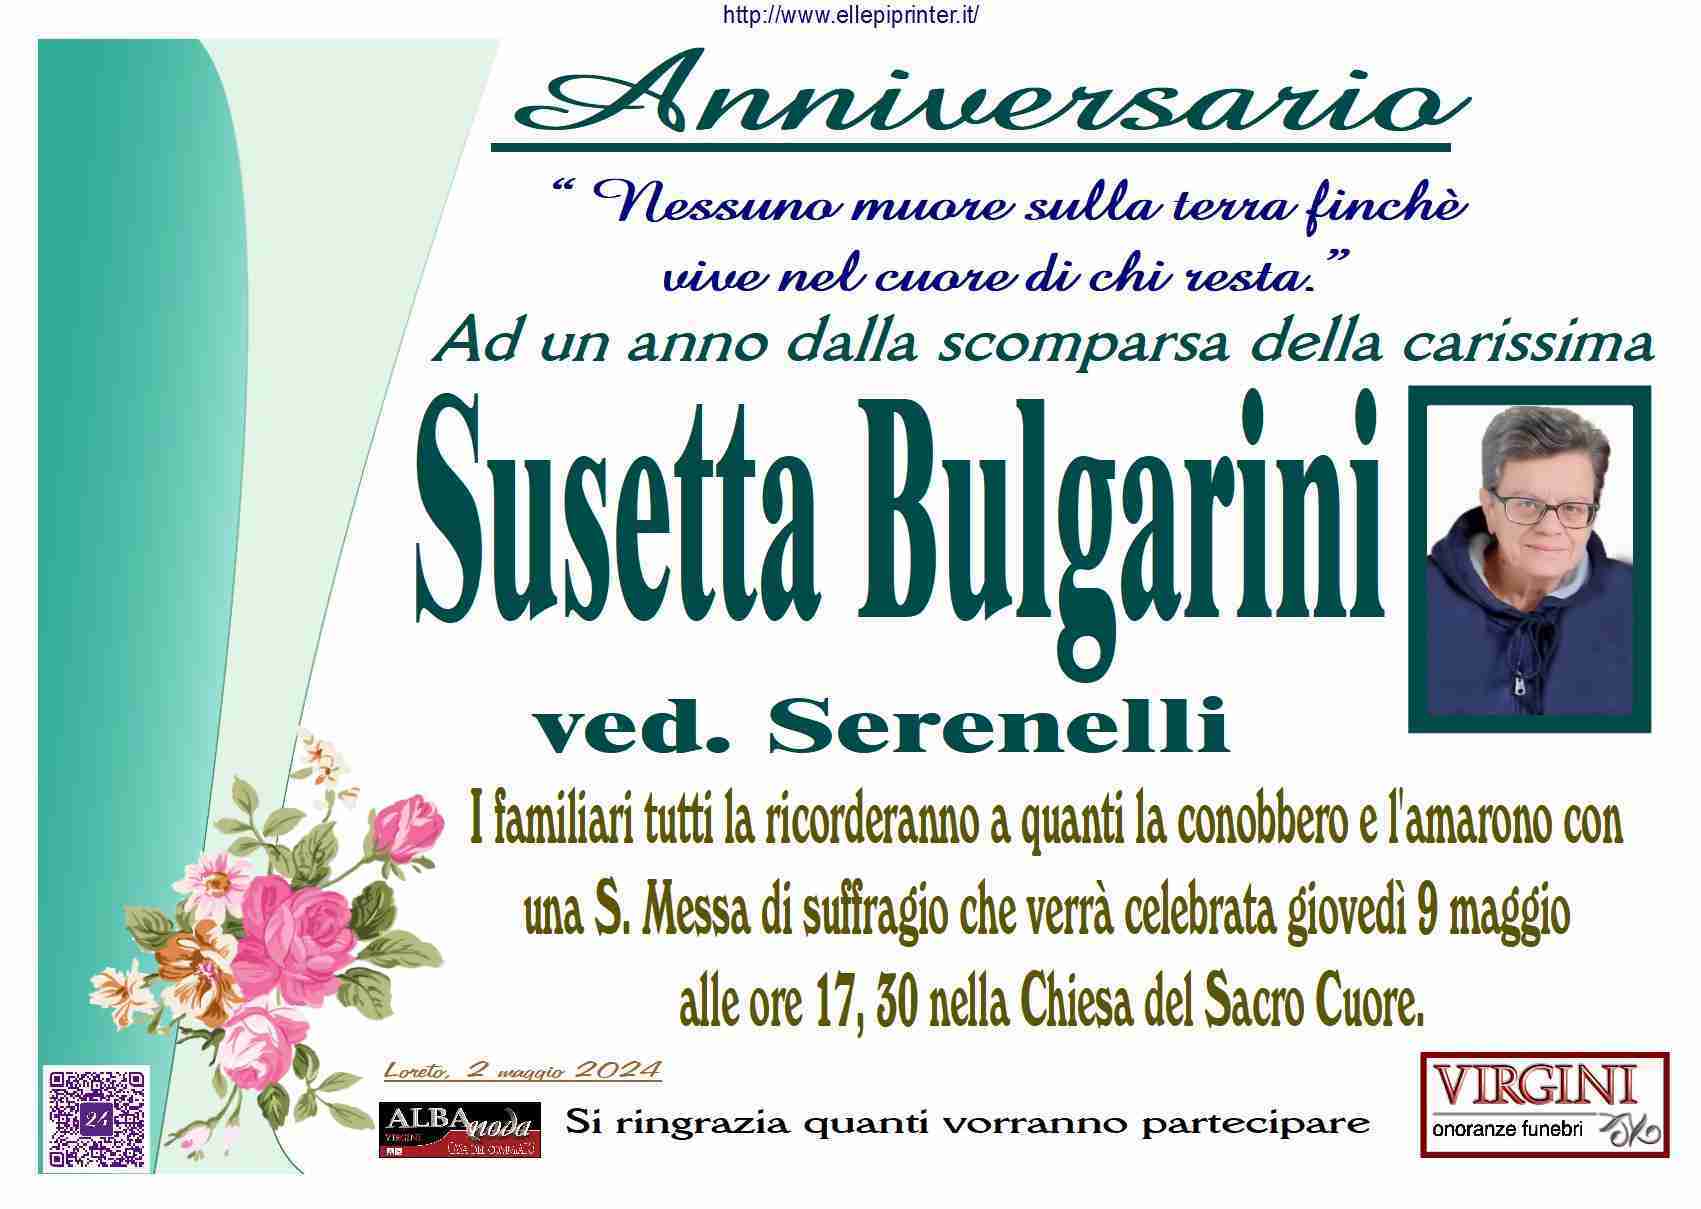 Susetta Bulgarini